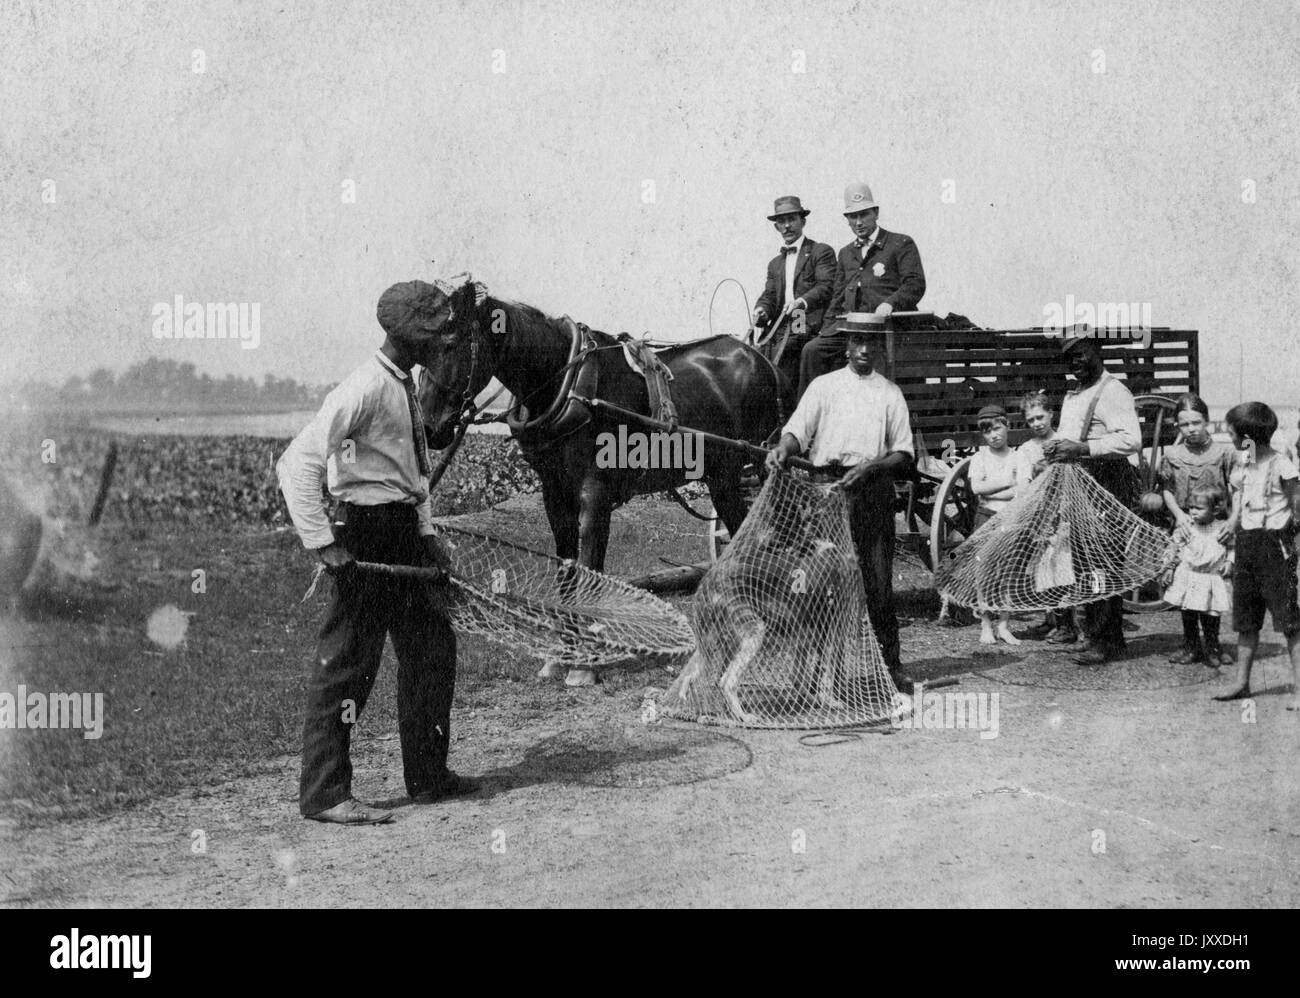 Trois chiens de traîneau américains, dont un contient un chien sauvage, et plusieurs jeunes enfants, se tiennent devant un wagon ouvert conduit par deux autres ouvriers et porté par un cheval, sur un sentier extérieur, 1912. Banque D'Images